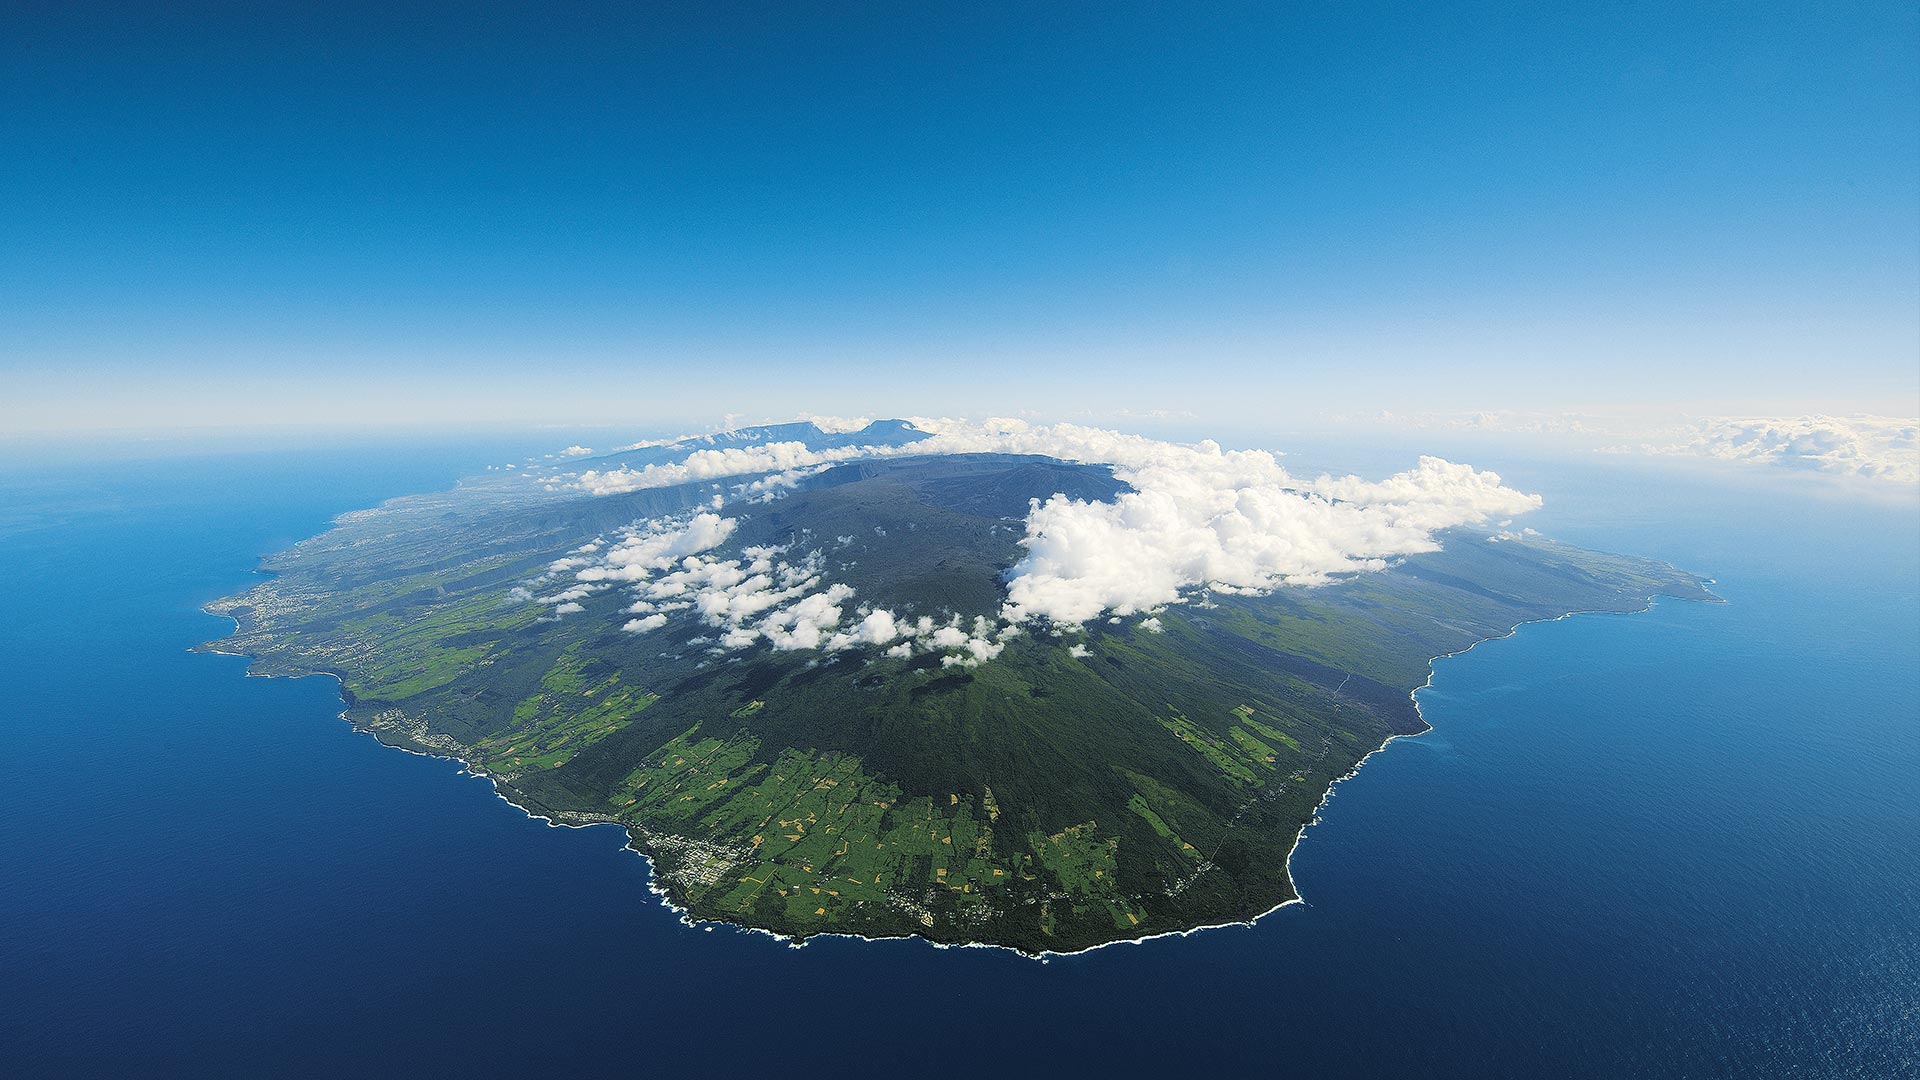 Etude de cas création du site de l'lle de la Réunion - Agence